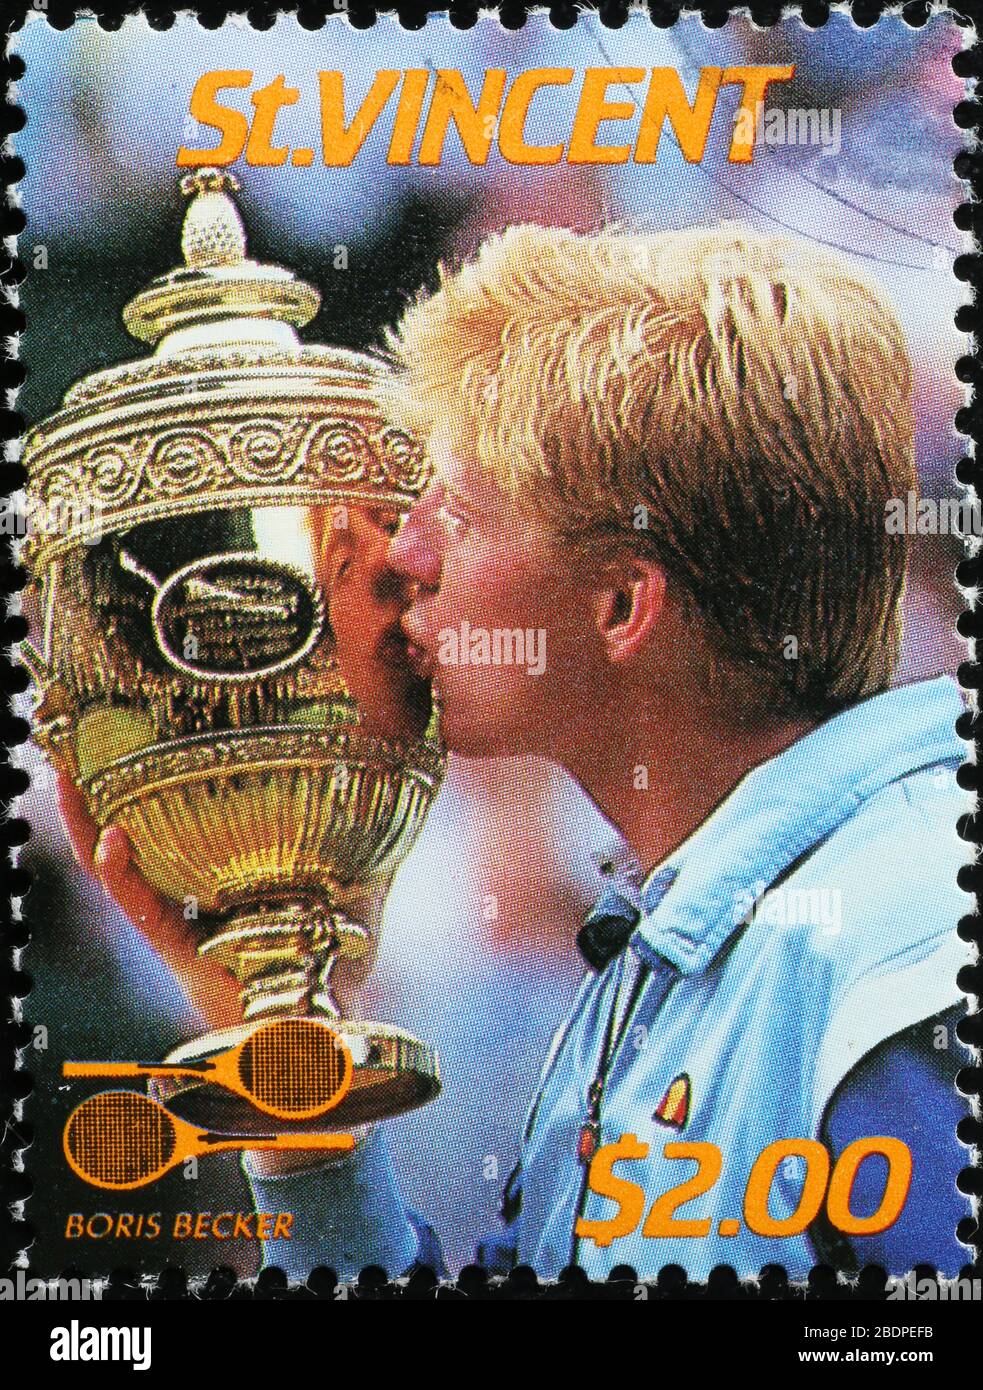 Boris Becker, champion de tennis, sur timbre-poste Banque D'Images